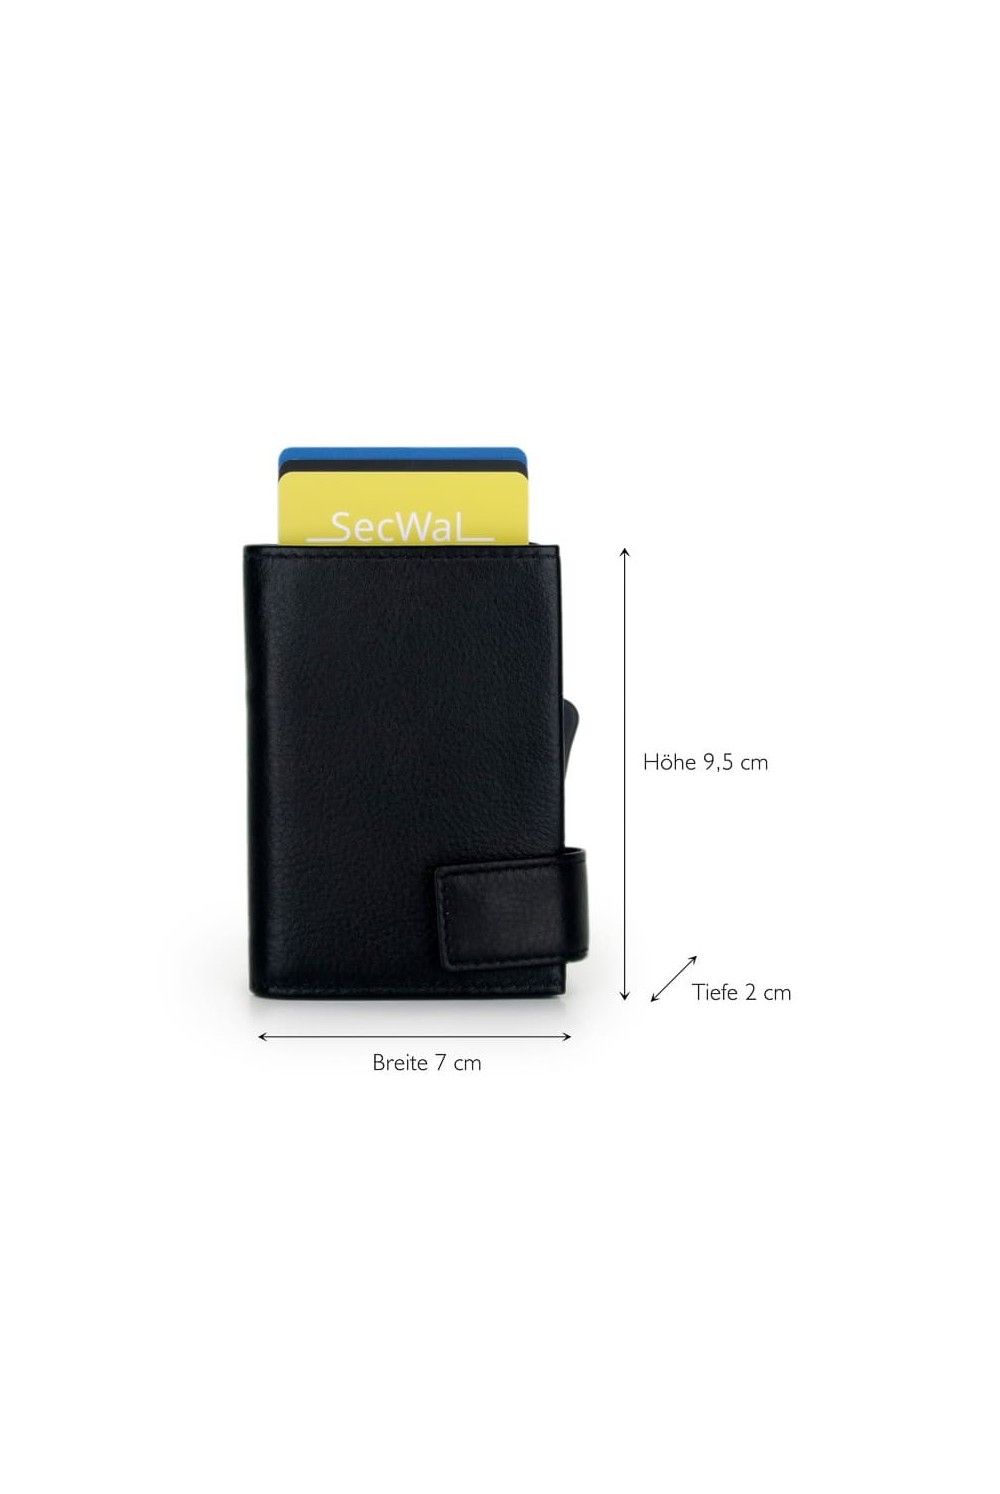 SecWal Card Case XL DK Leather Black